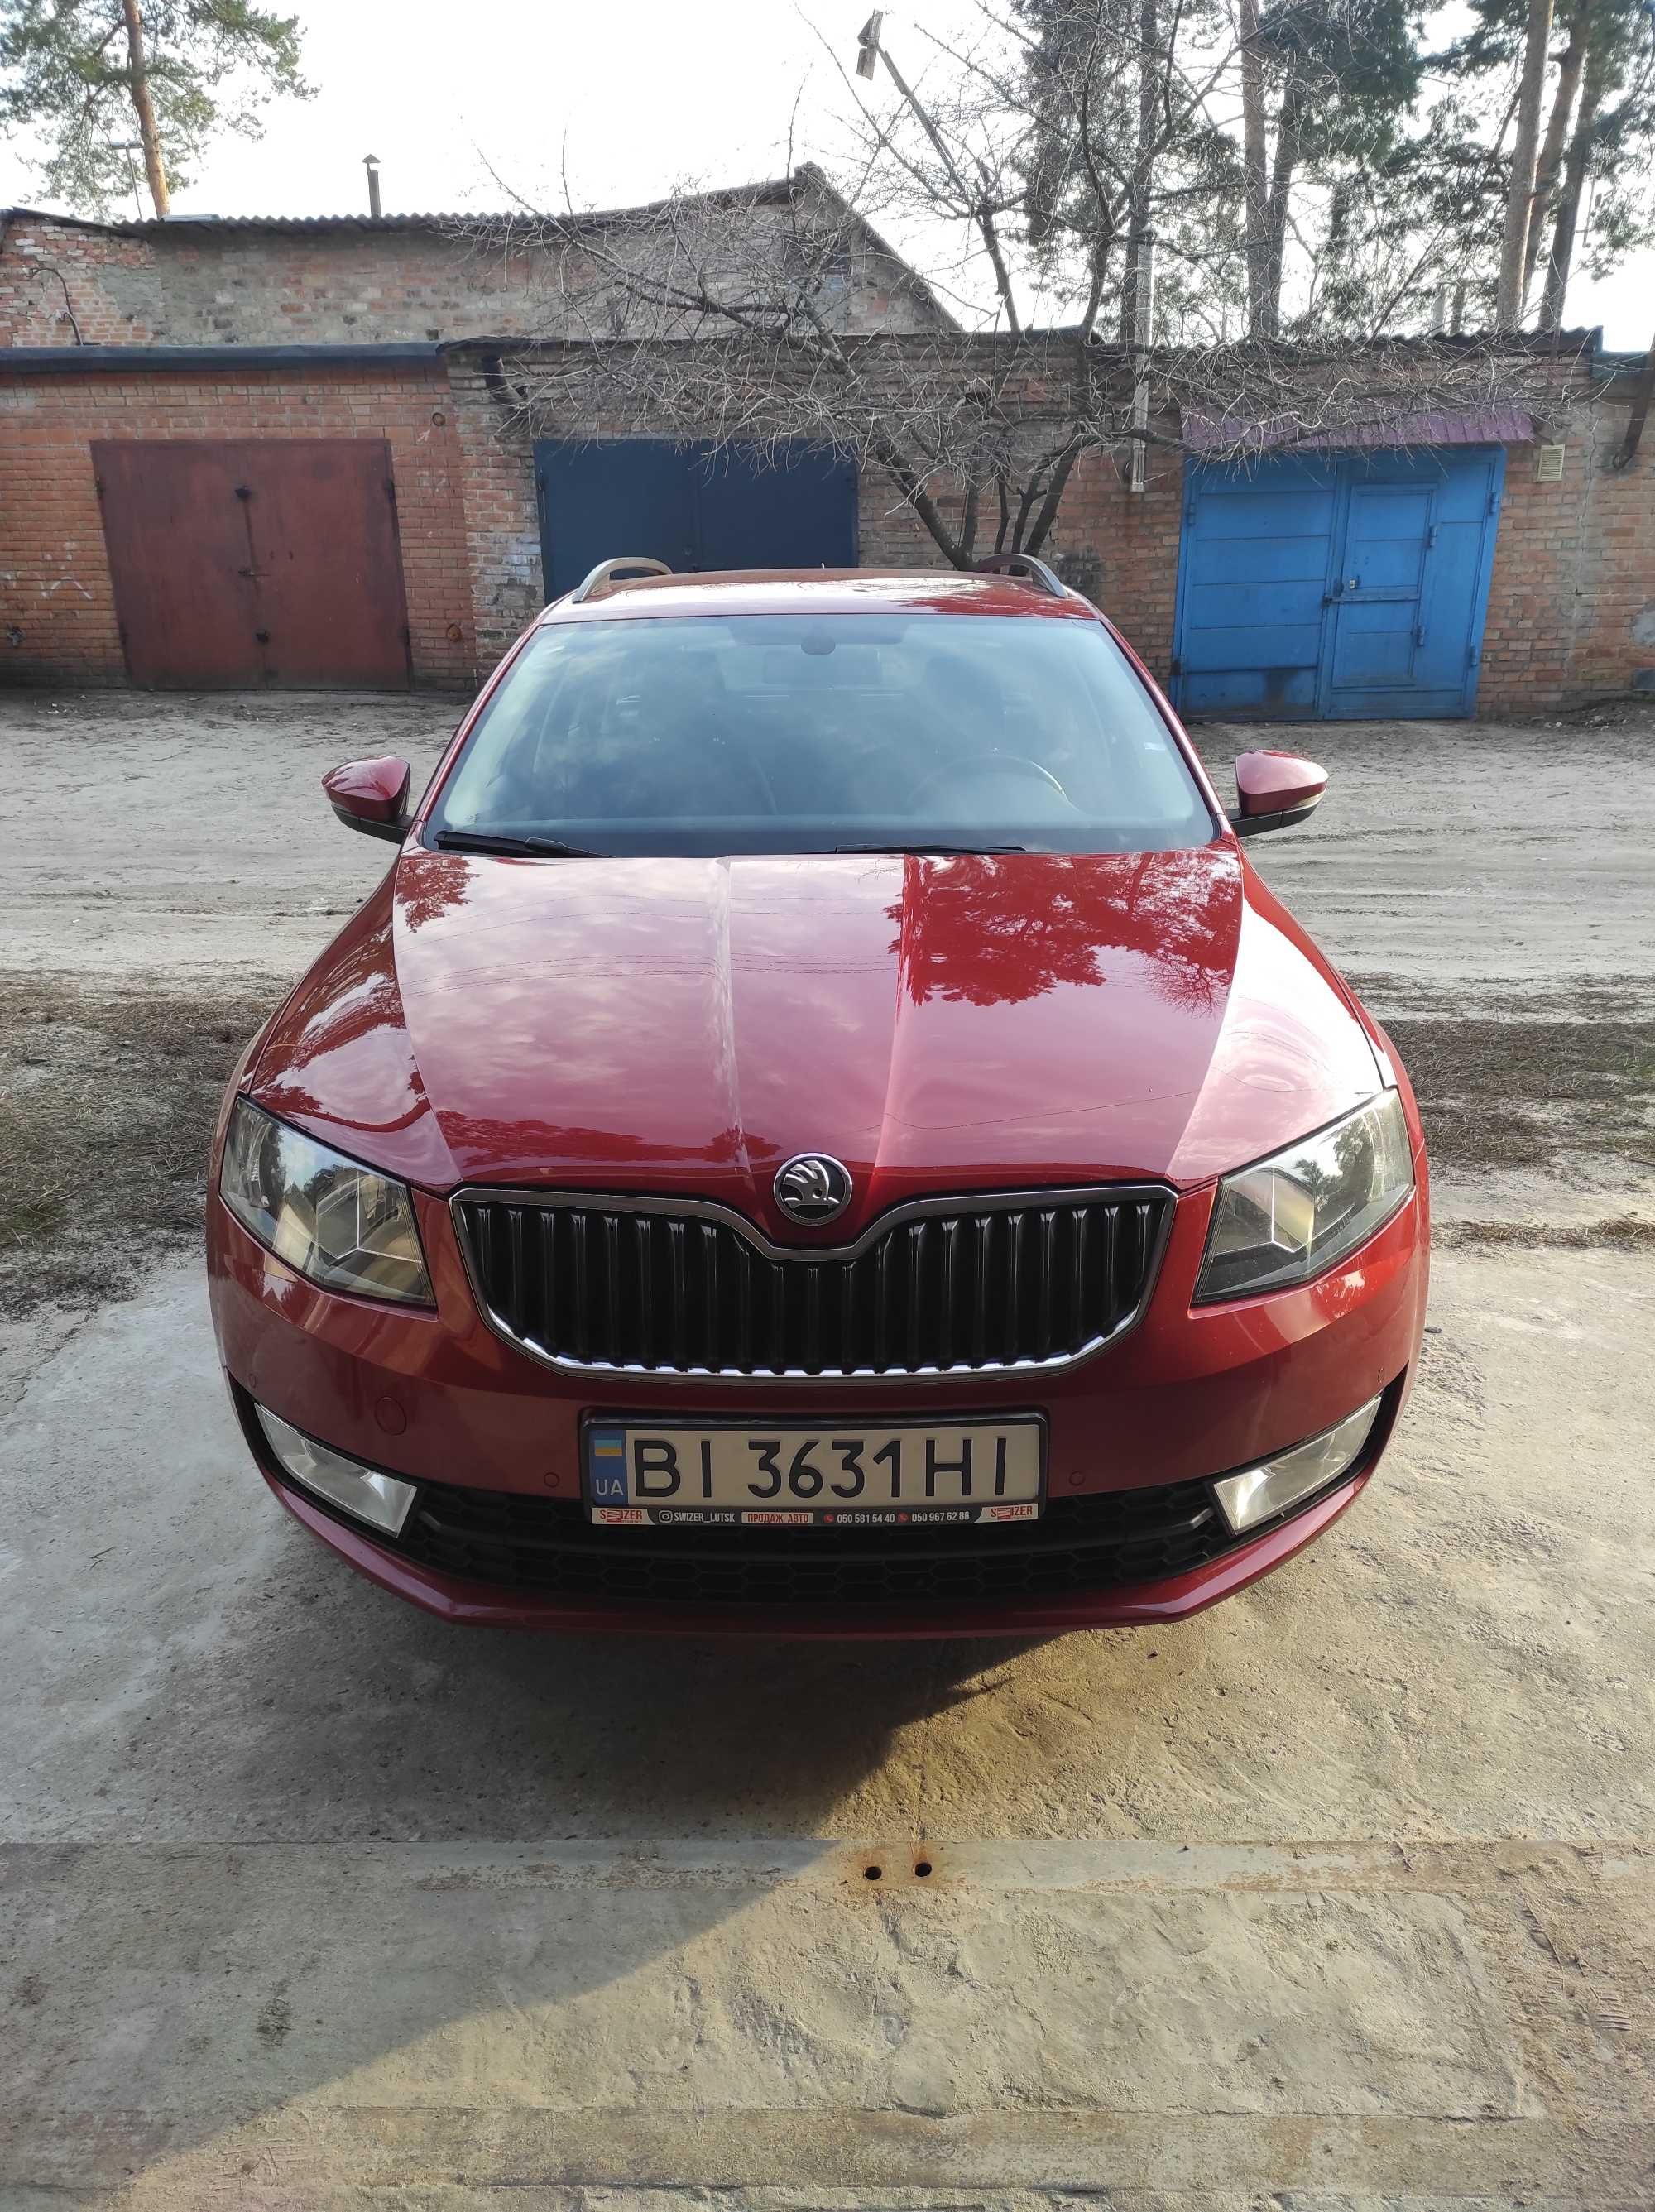 Продам авто Skoda Oktavia A7, 2014 р.в., 1.6 TDI